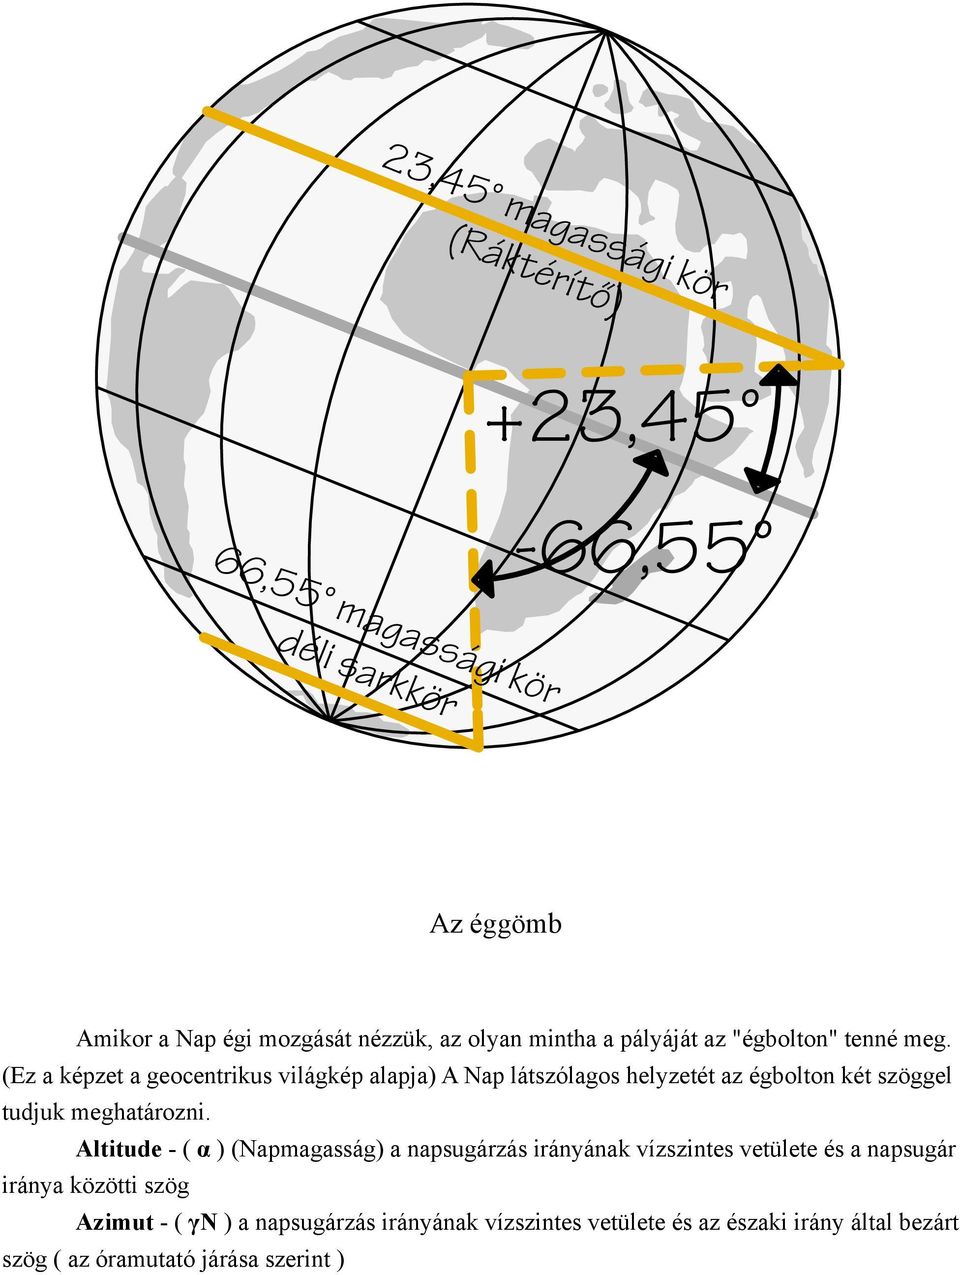 (Ez a képzet a geocentrikus világkép alapja) A Nap látszólagos helyzetét az égbolton két szöggel tudjuk meghatározni.